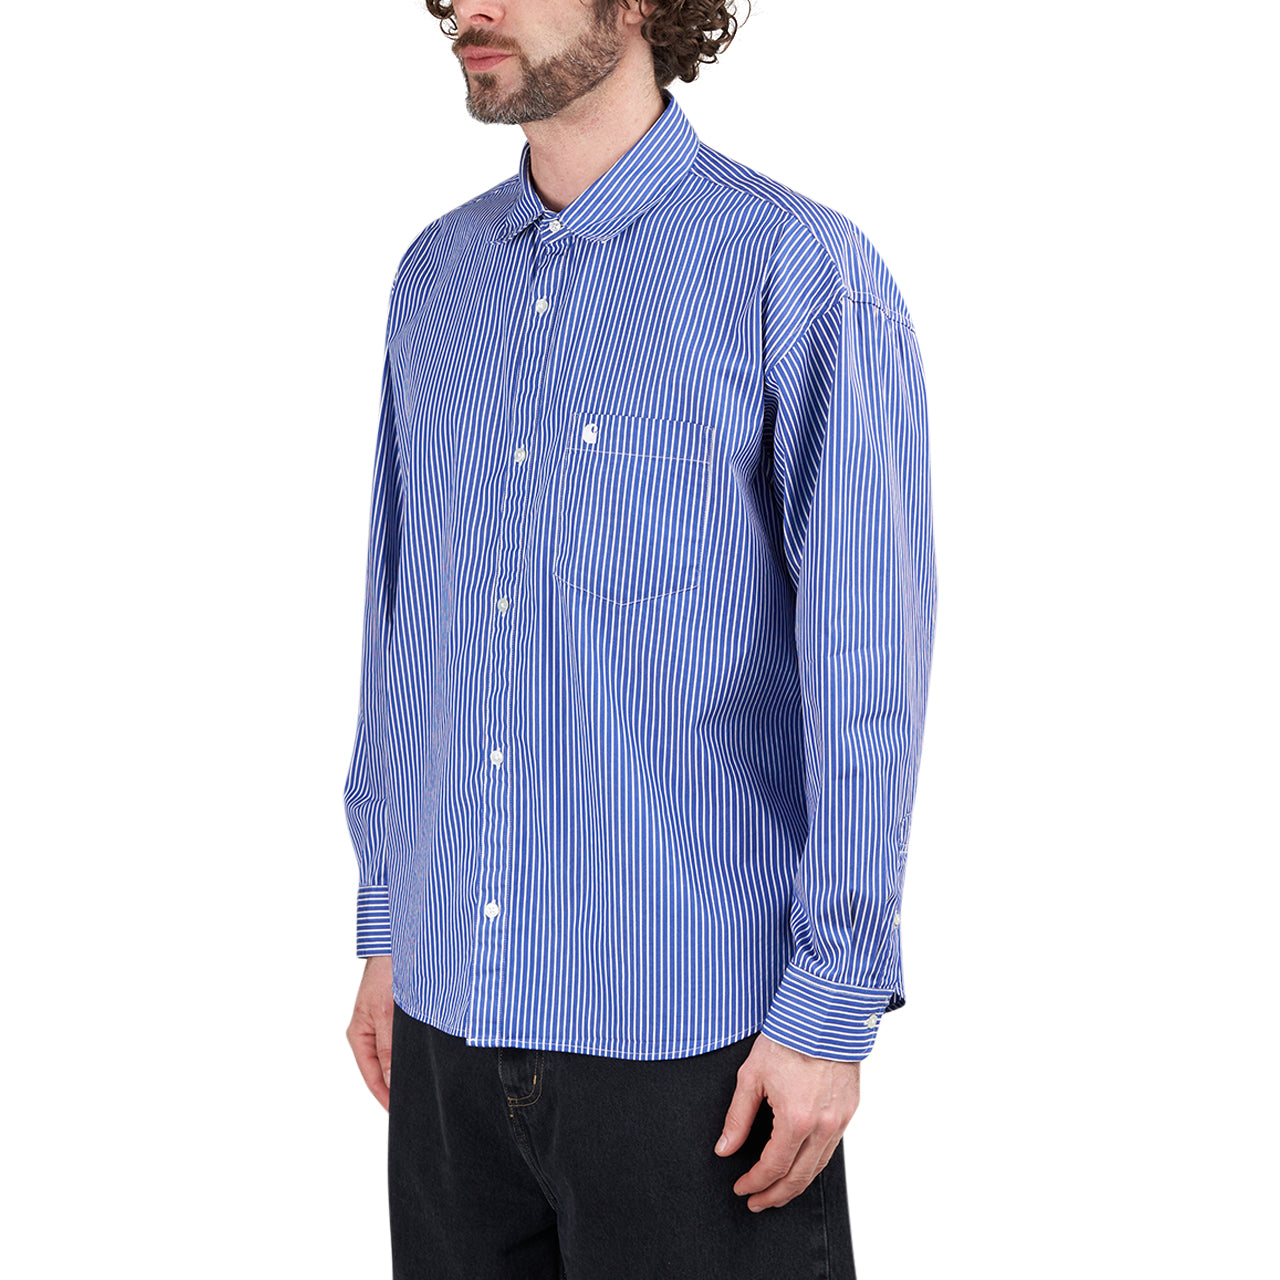 Carhartt WIP L/S Drake Shirt (Blau / Weiß)  - Allike Store